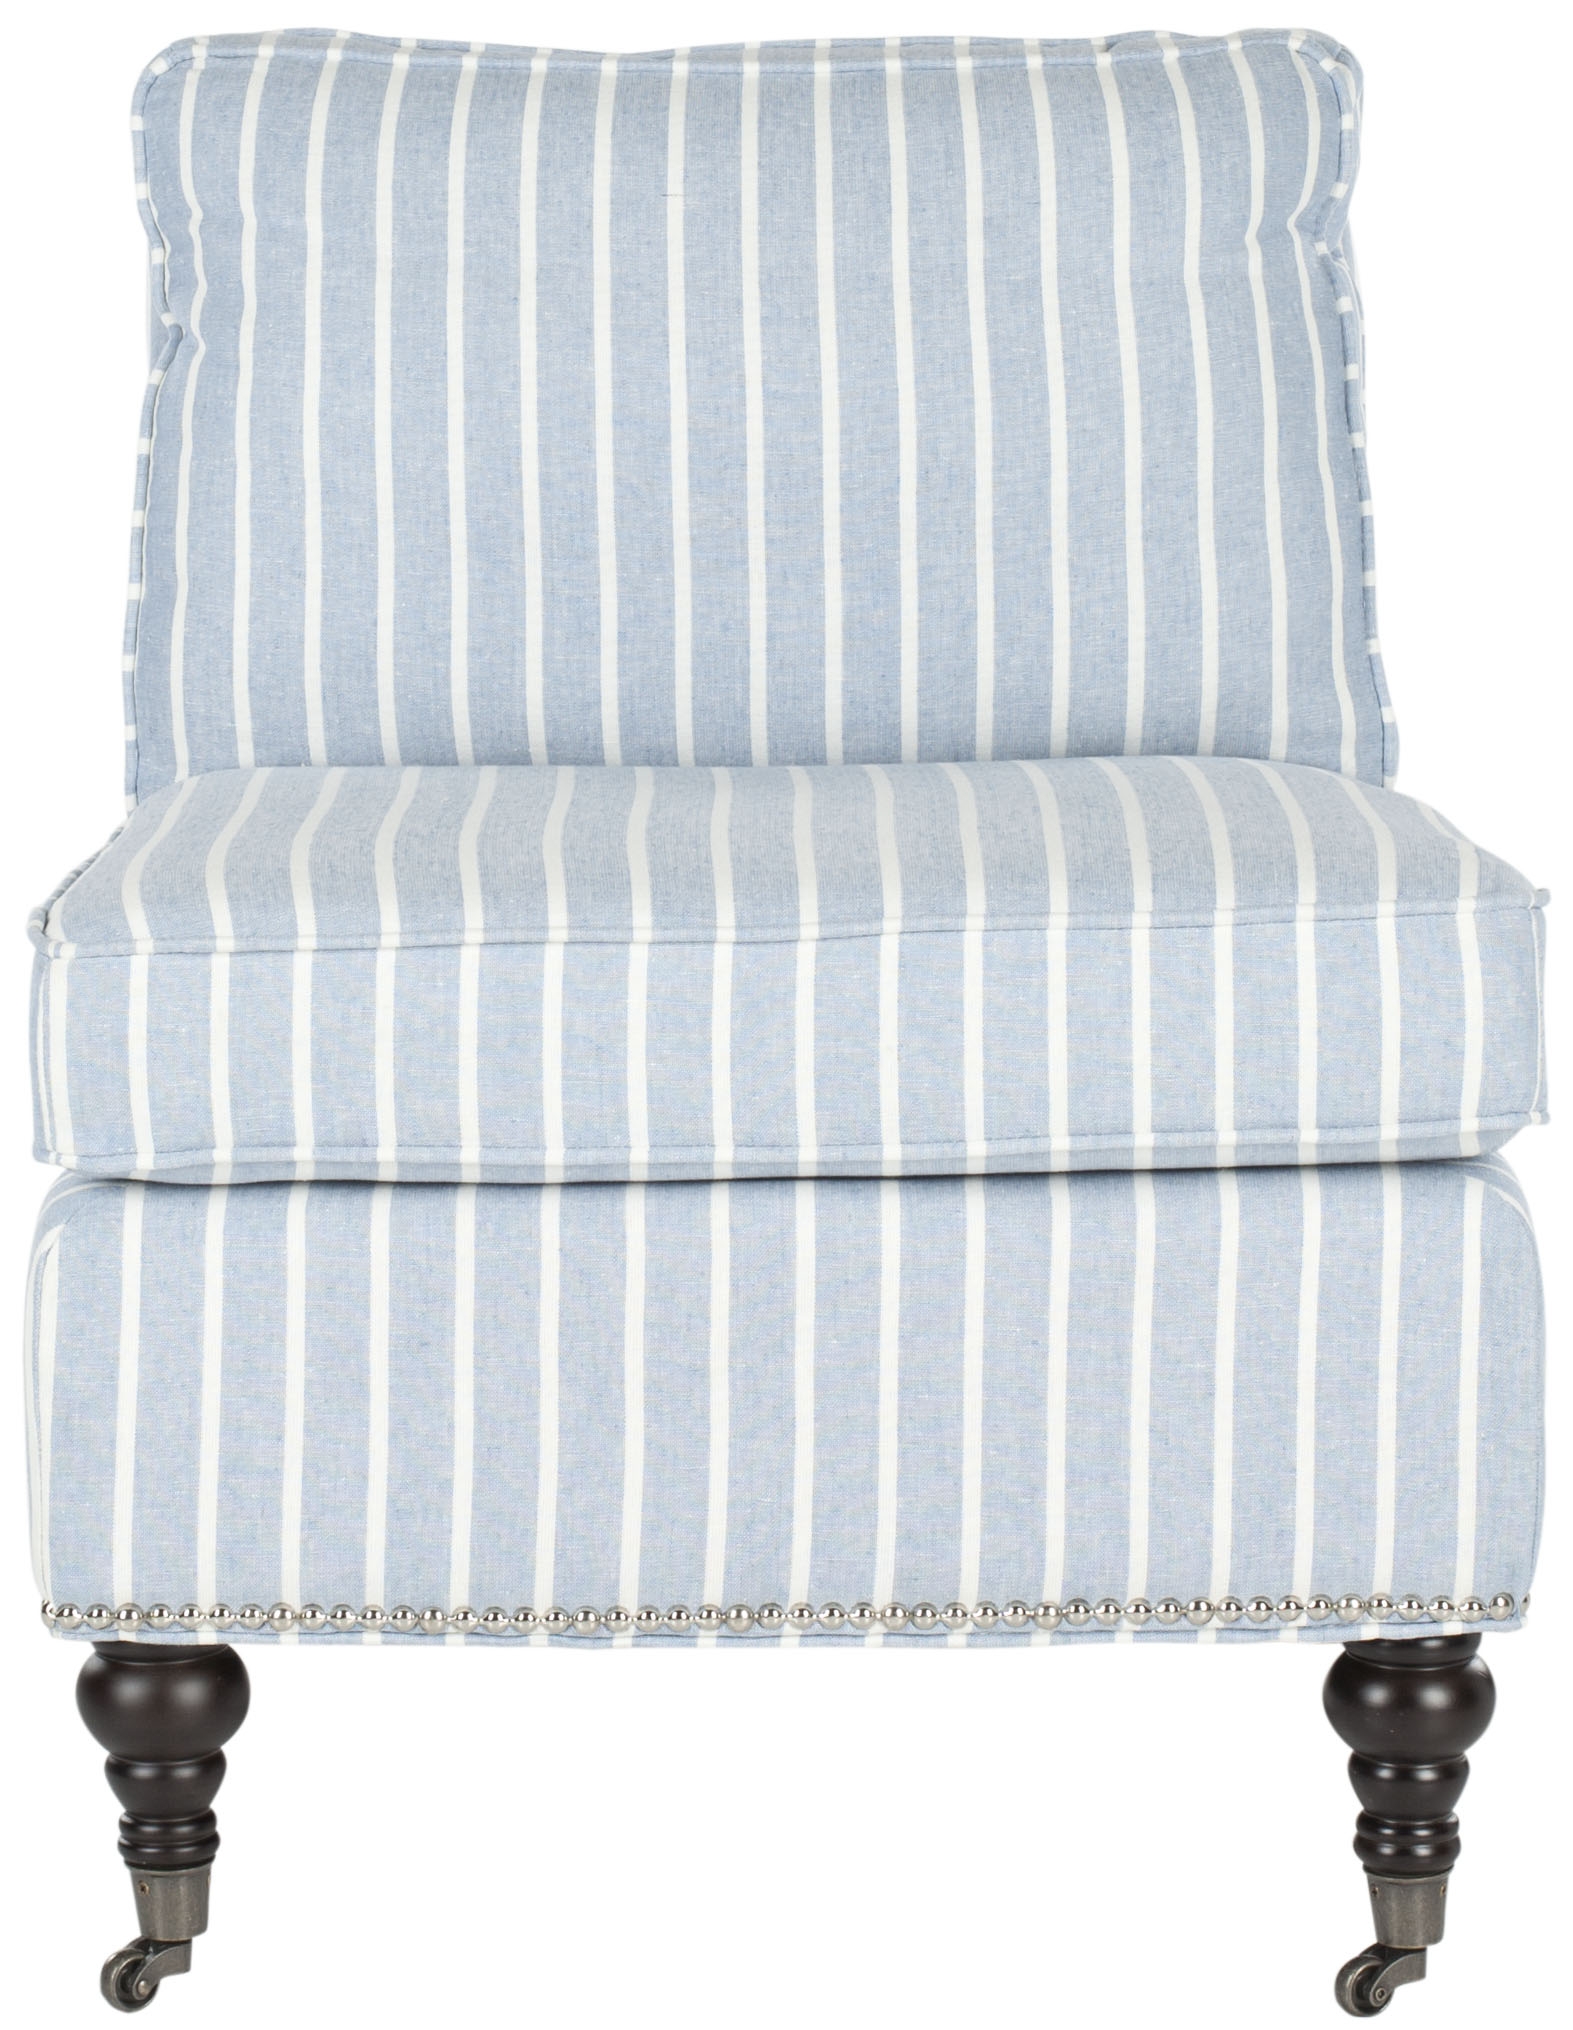 Randy Slipper Chair - Blue/White/Espresso - Arlo Home - Image 0